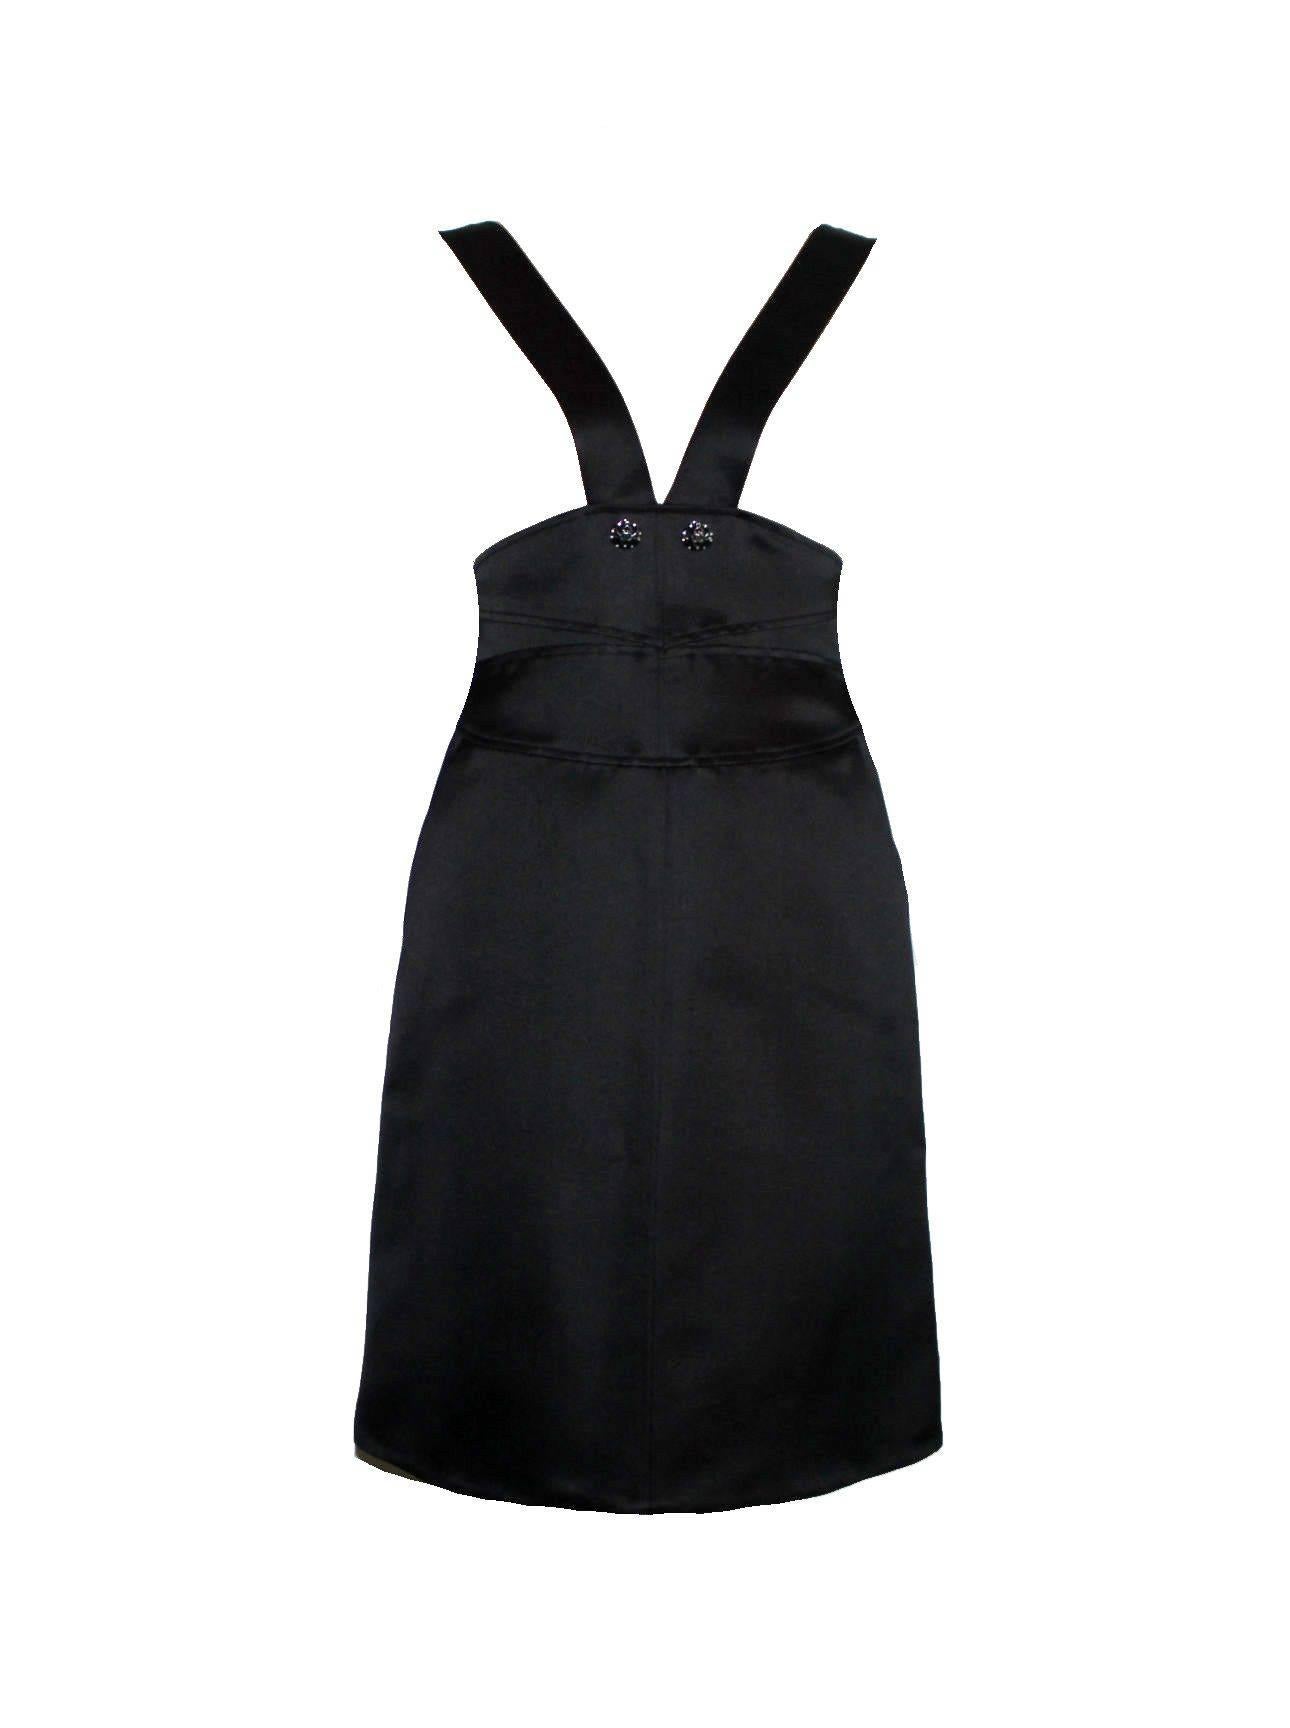 Eine moderne, aber klassische Version des berühmten kleinen schwarzen Kleides von Chanel
Bestehend aus zwei Teilen, Kleid und Mantel
Das Kleid hat einen tiefen V-Ausschnitt mit Trägern, die in der Taille zusammenlaufen.
Träger in der Taille mit 2